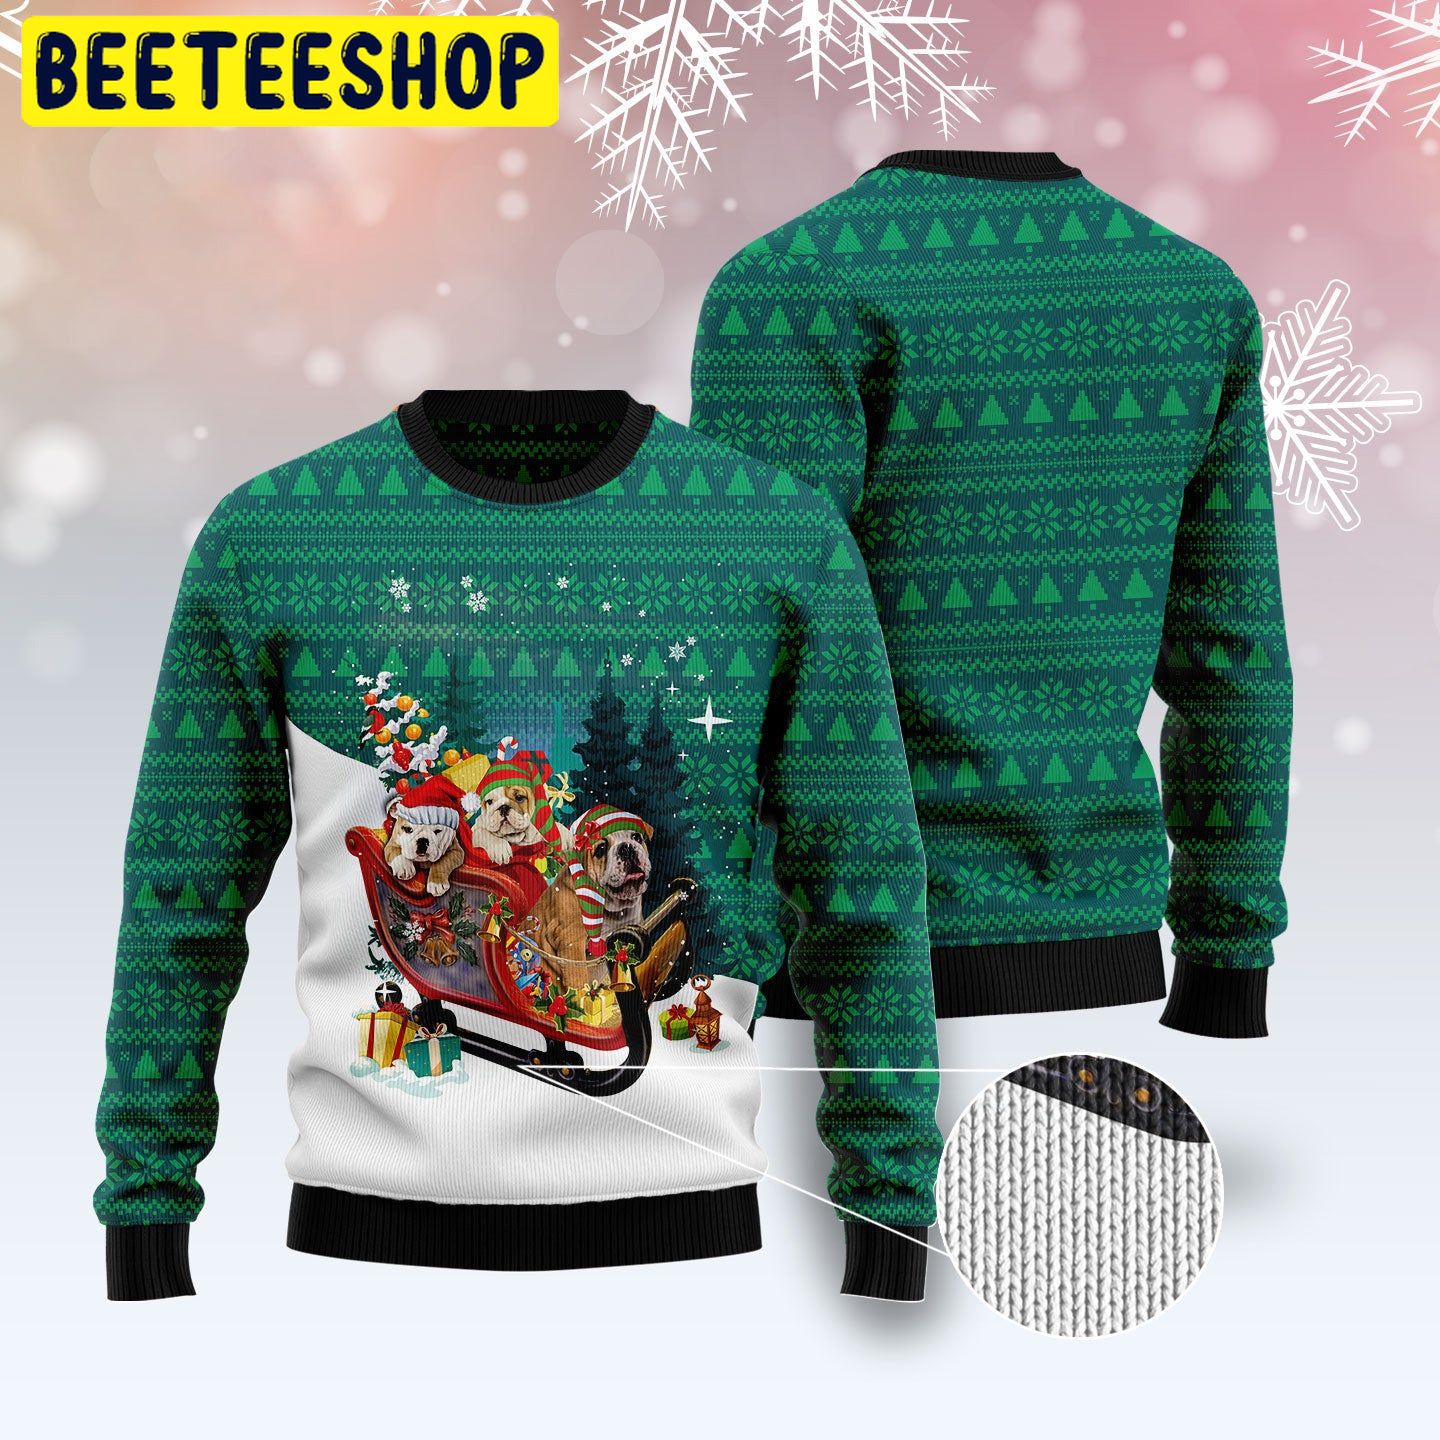 Bulldog Sleigh Trending Ugly Christmas Sweatshirt